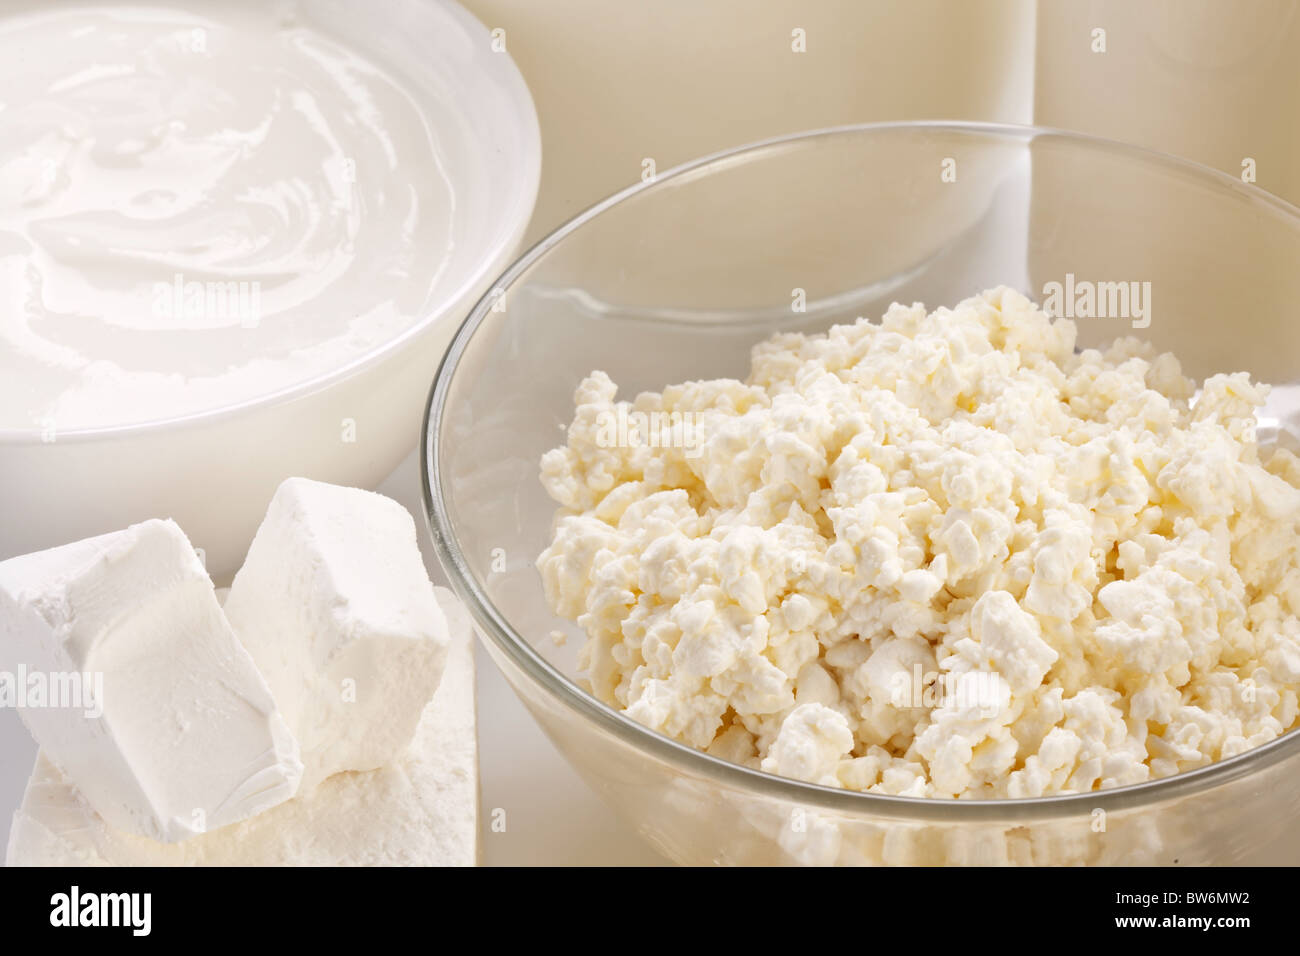 Diversi prodotti lattiero-caseari: formaggio; crema; il latte. Su uno sfondo bianco. Foto Stock